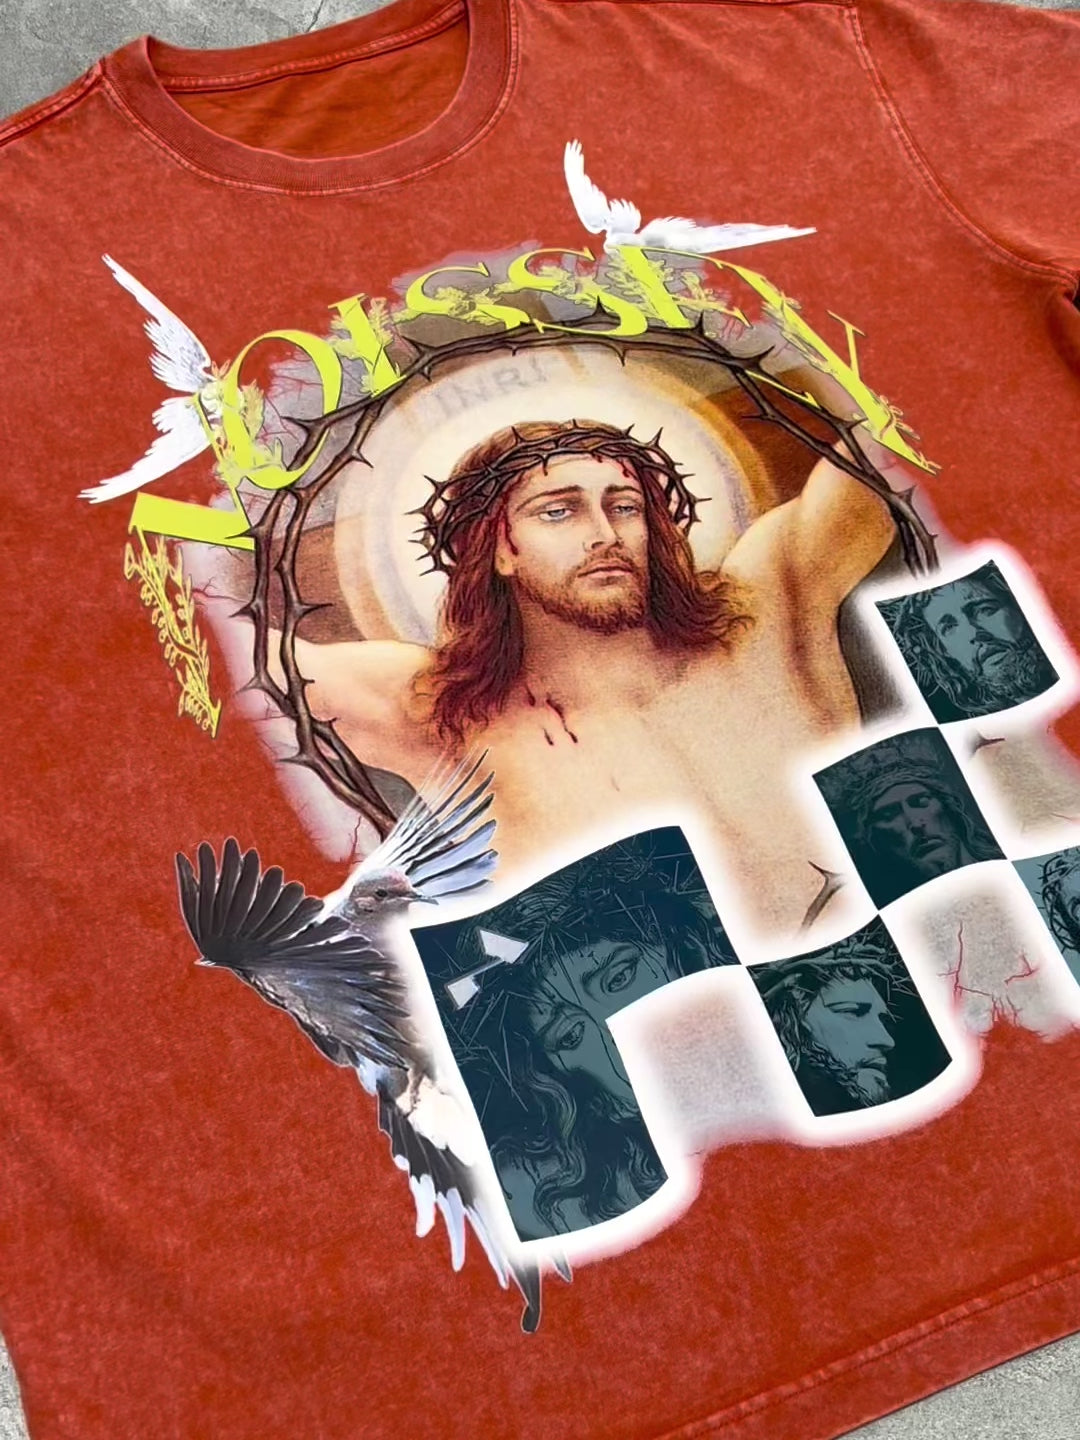 障害物と危険© Jesus &amp; Peace Dove Tシャツ